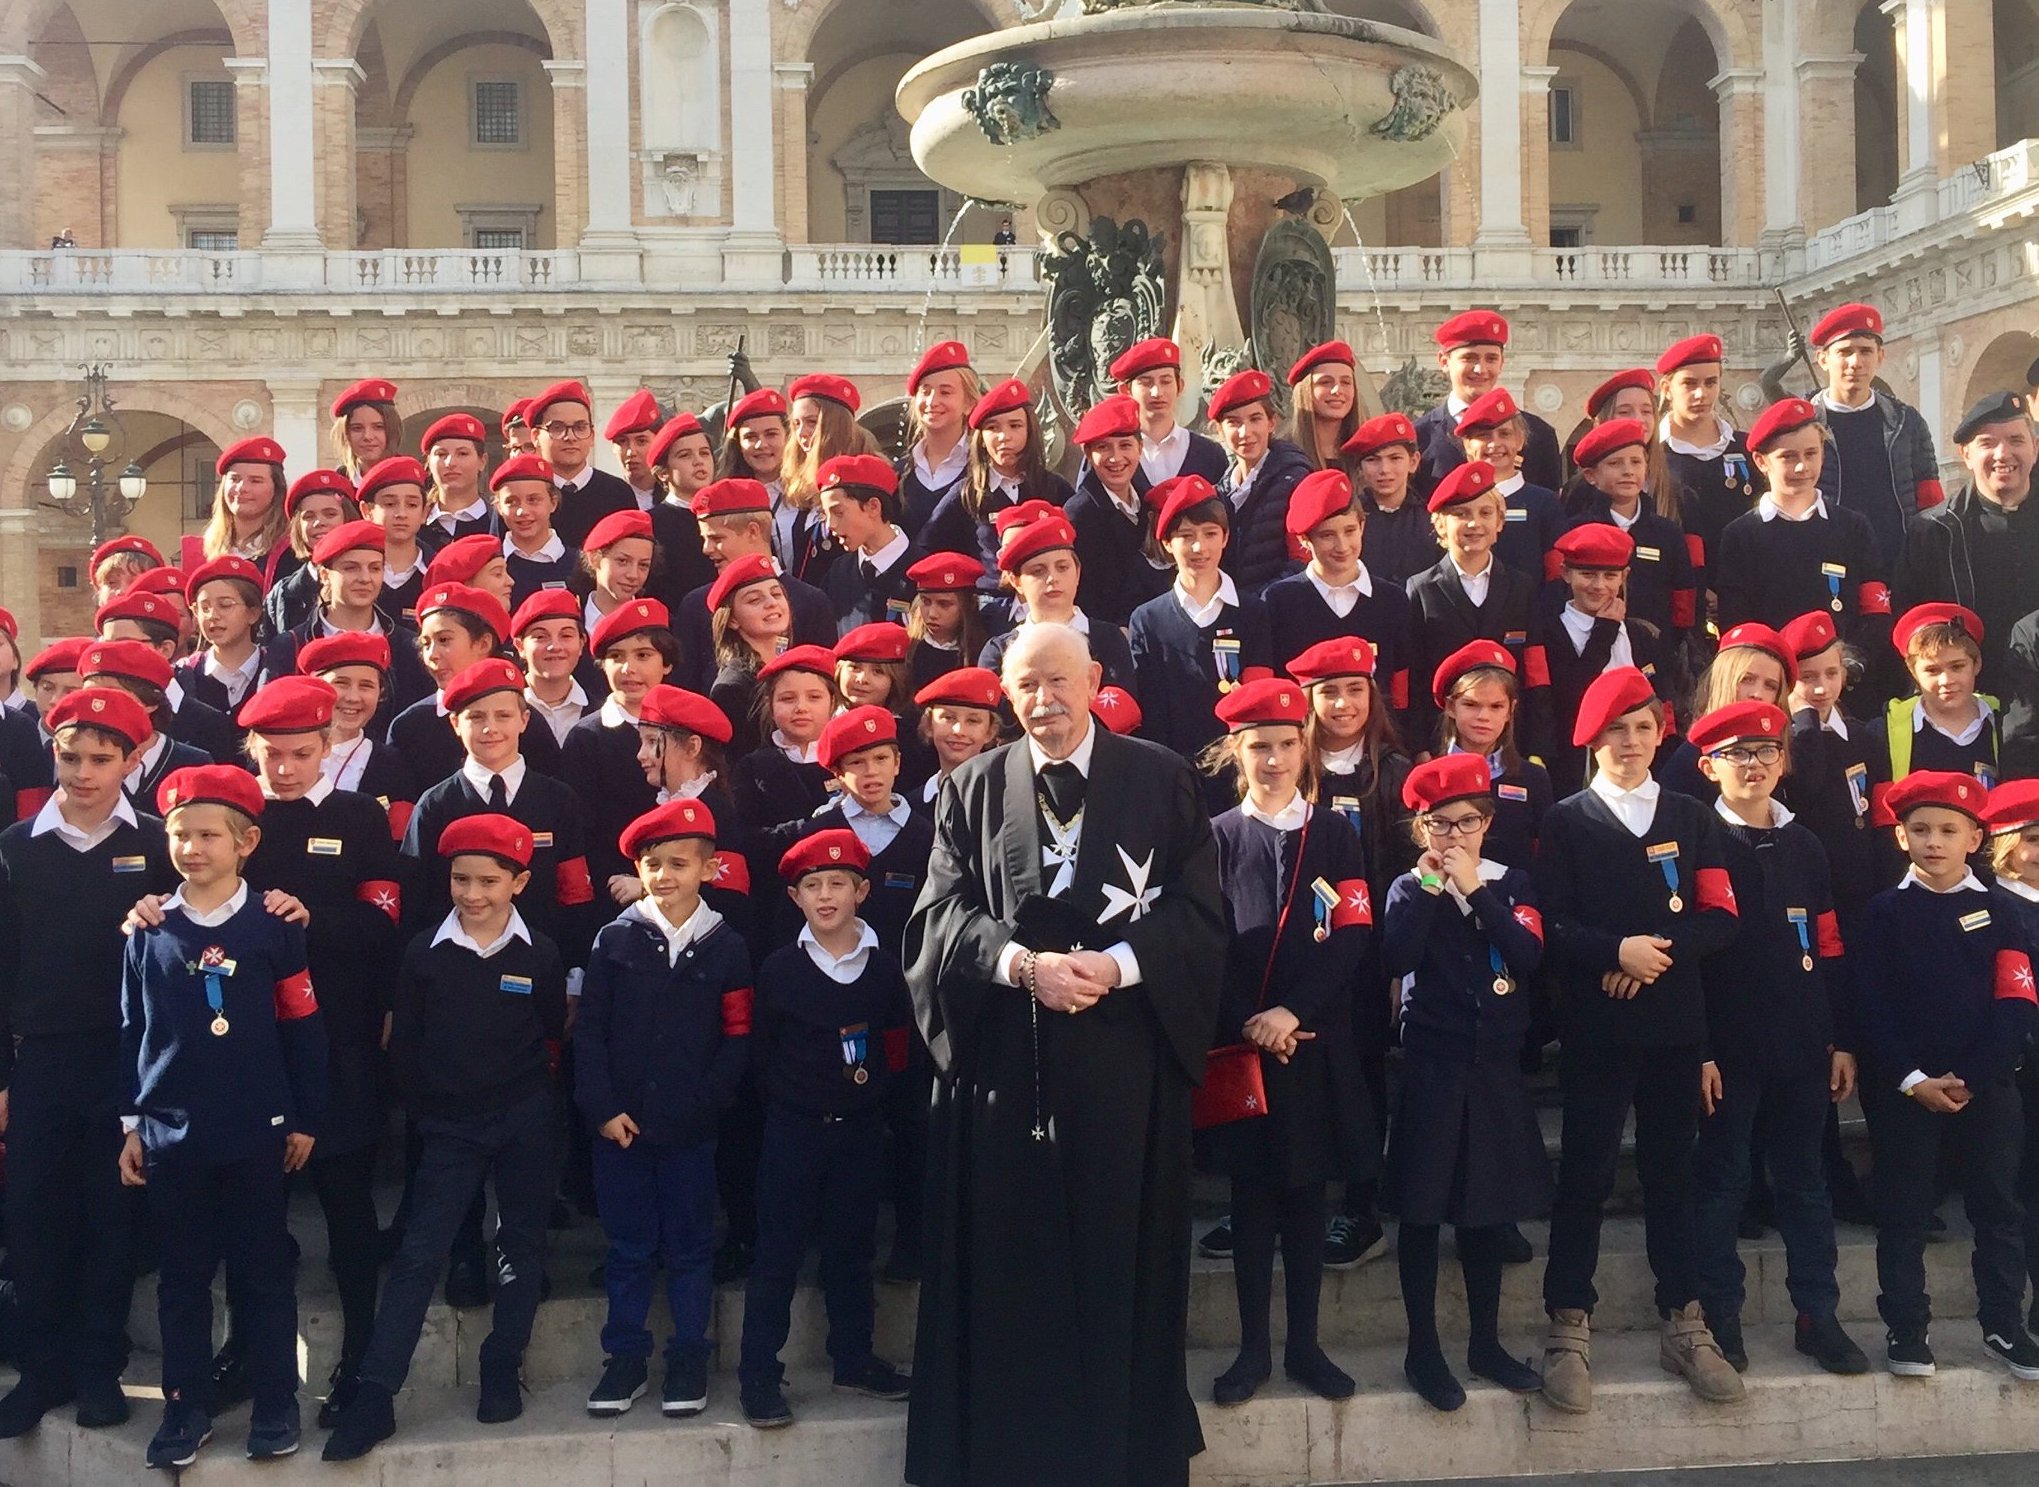 Pellegrinaggio dell’Ordine di Malta al Santuario di Loreto: oltre 1700 i partecipanti da tutta Italia